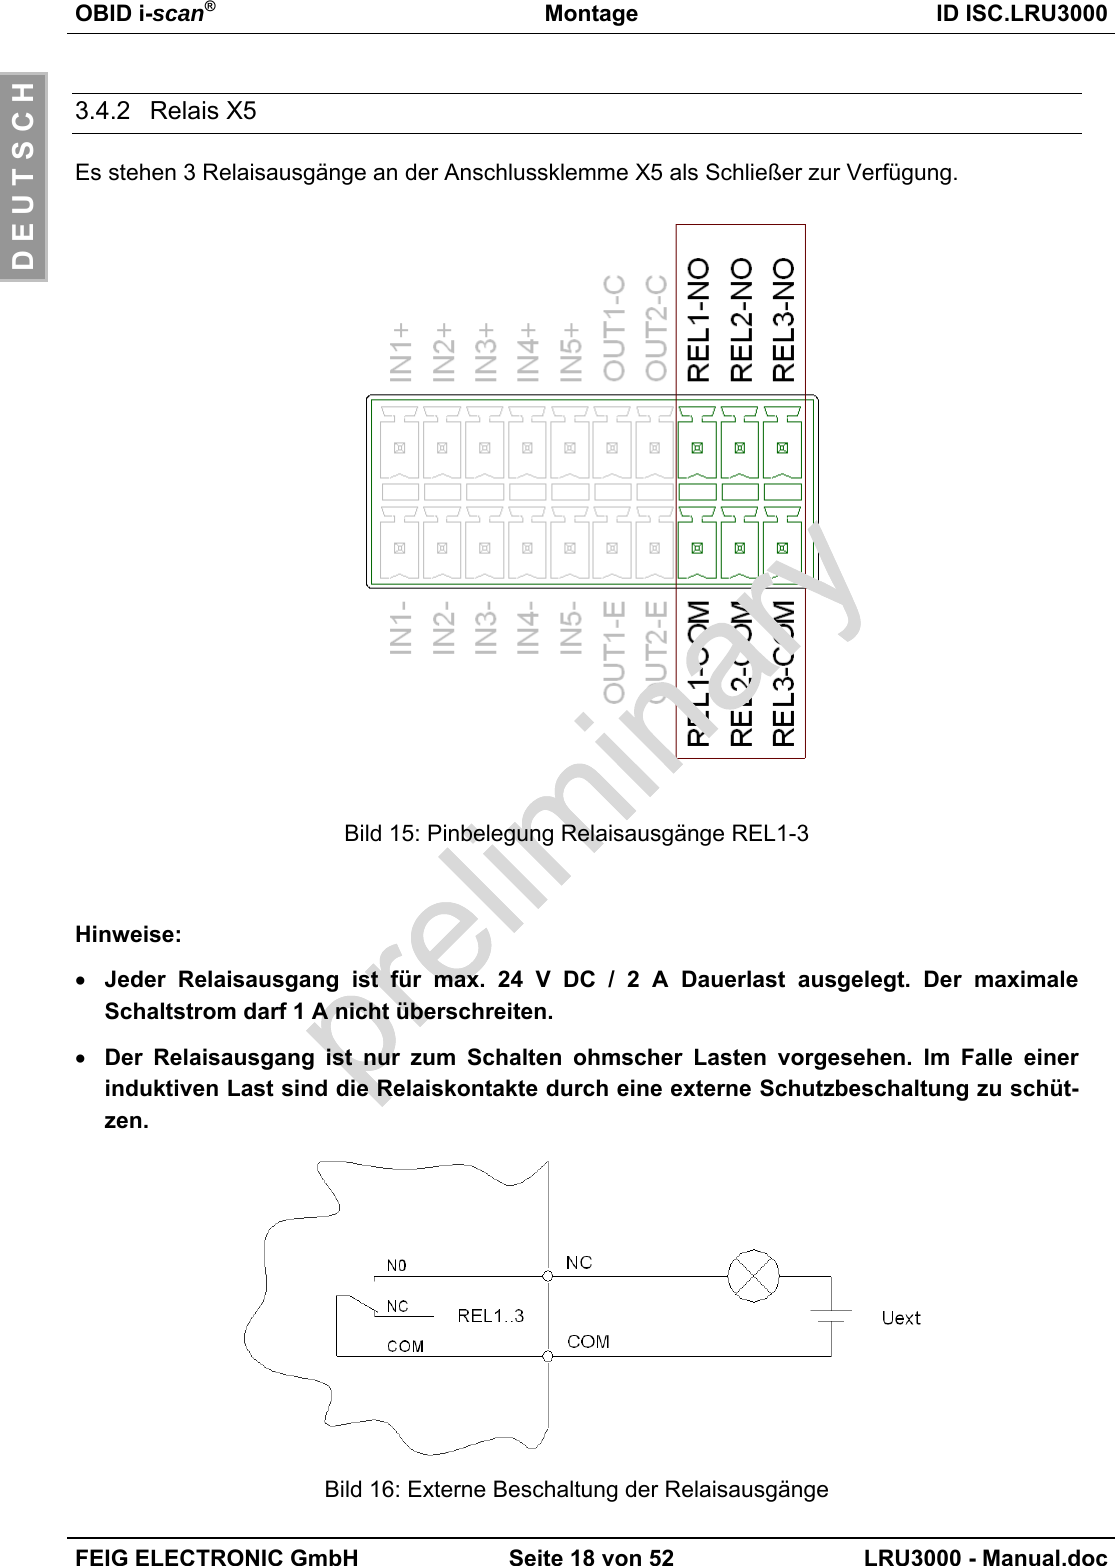 OBID i-scan®Montage ID ISC.LRU3000FEIG ELECTRONIC GmbH Seite 18 von 52 LRU3000 - Manual.docD E U T S C H3.4.2 Relais X5Es stehen 3 Relaisausgänge an der Anschlussklemme X5 als Schließer zur Verfügung.Bild 15: Pinbelegung Relaisausgänge REL1-3Hinweise:• Jeder Relaisausgang ist für max. 24 V DC / 2 A Dauerlast ausgelegt. Der maximaleSchaltstrom darf 1 A nicht überschreiten.• Der Relaisausgang ist nur zum Schalten ohmscher Lasten vorgesehen. Im Falle einerinduktiven Last sind die Relaiskontakte durch eine externe Schutzbeschaltung zu schüt-zen.Bild 16: Externe Beschaltung der Relaisausgänge